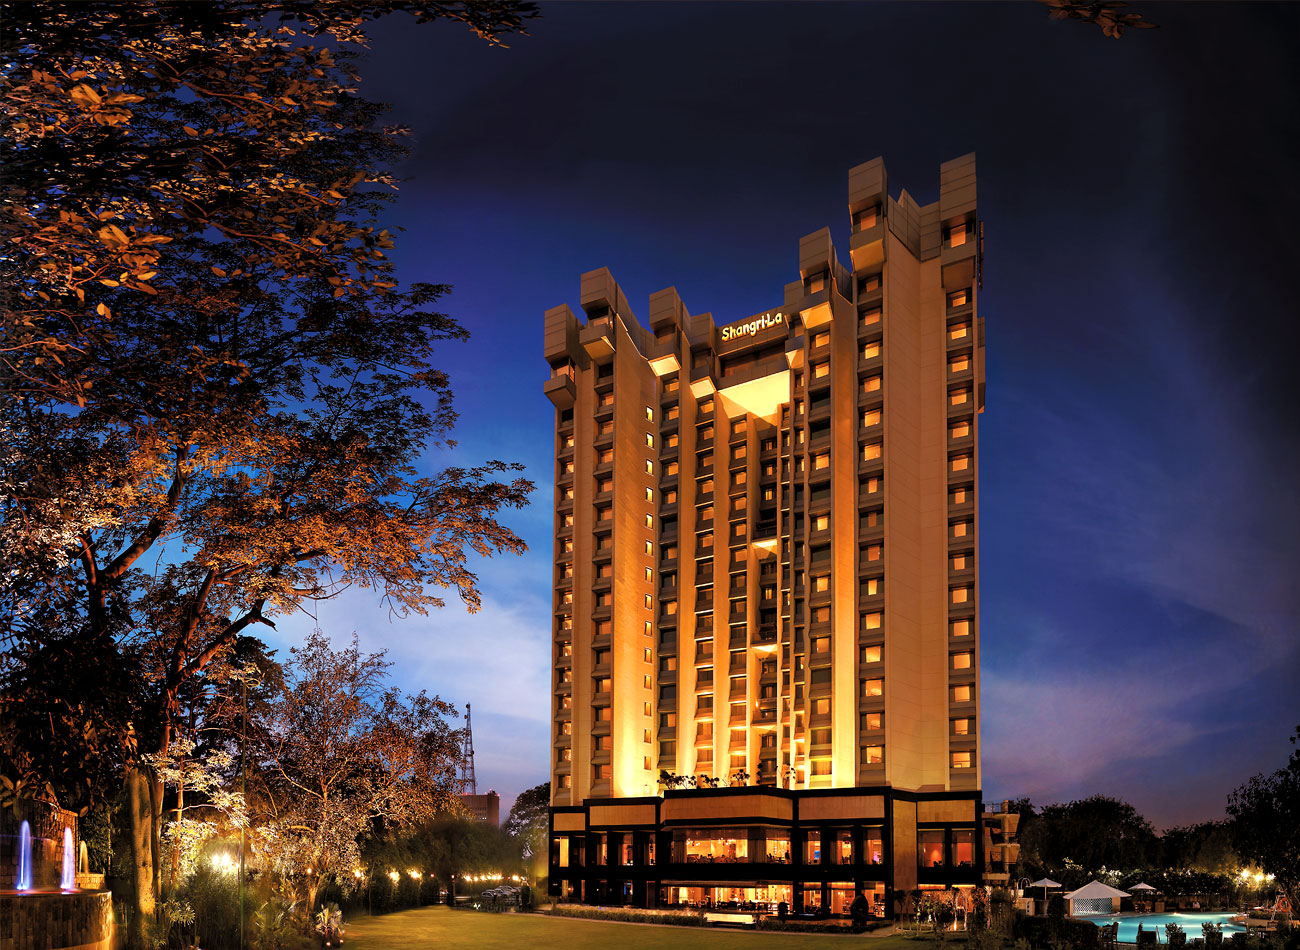 Shangri-La's - Eros Hotel, New Delhi Review.